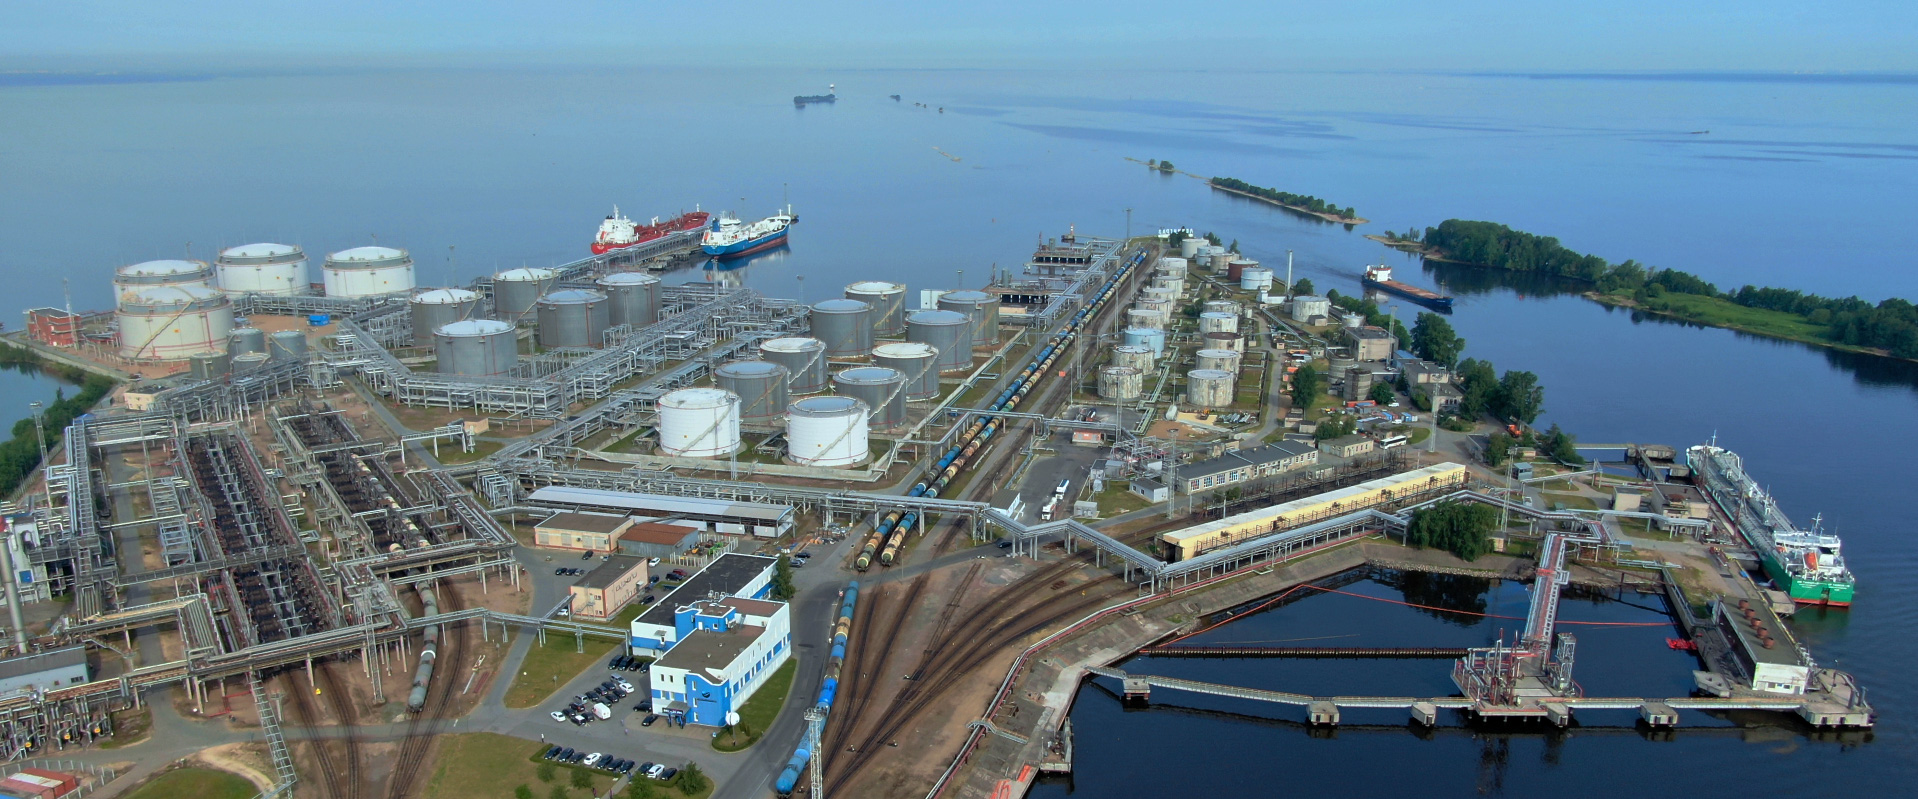 3 августа 2021 г. Акционерное общество  «Петербургский нефтяной терминал» получил разрешение на строительство нового перевалочного комплекса.